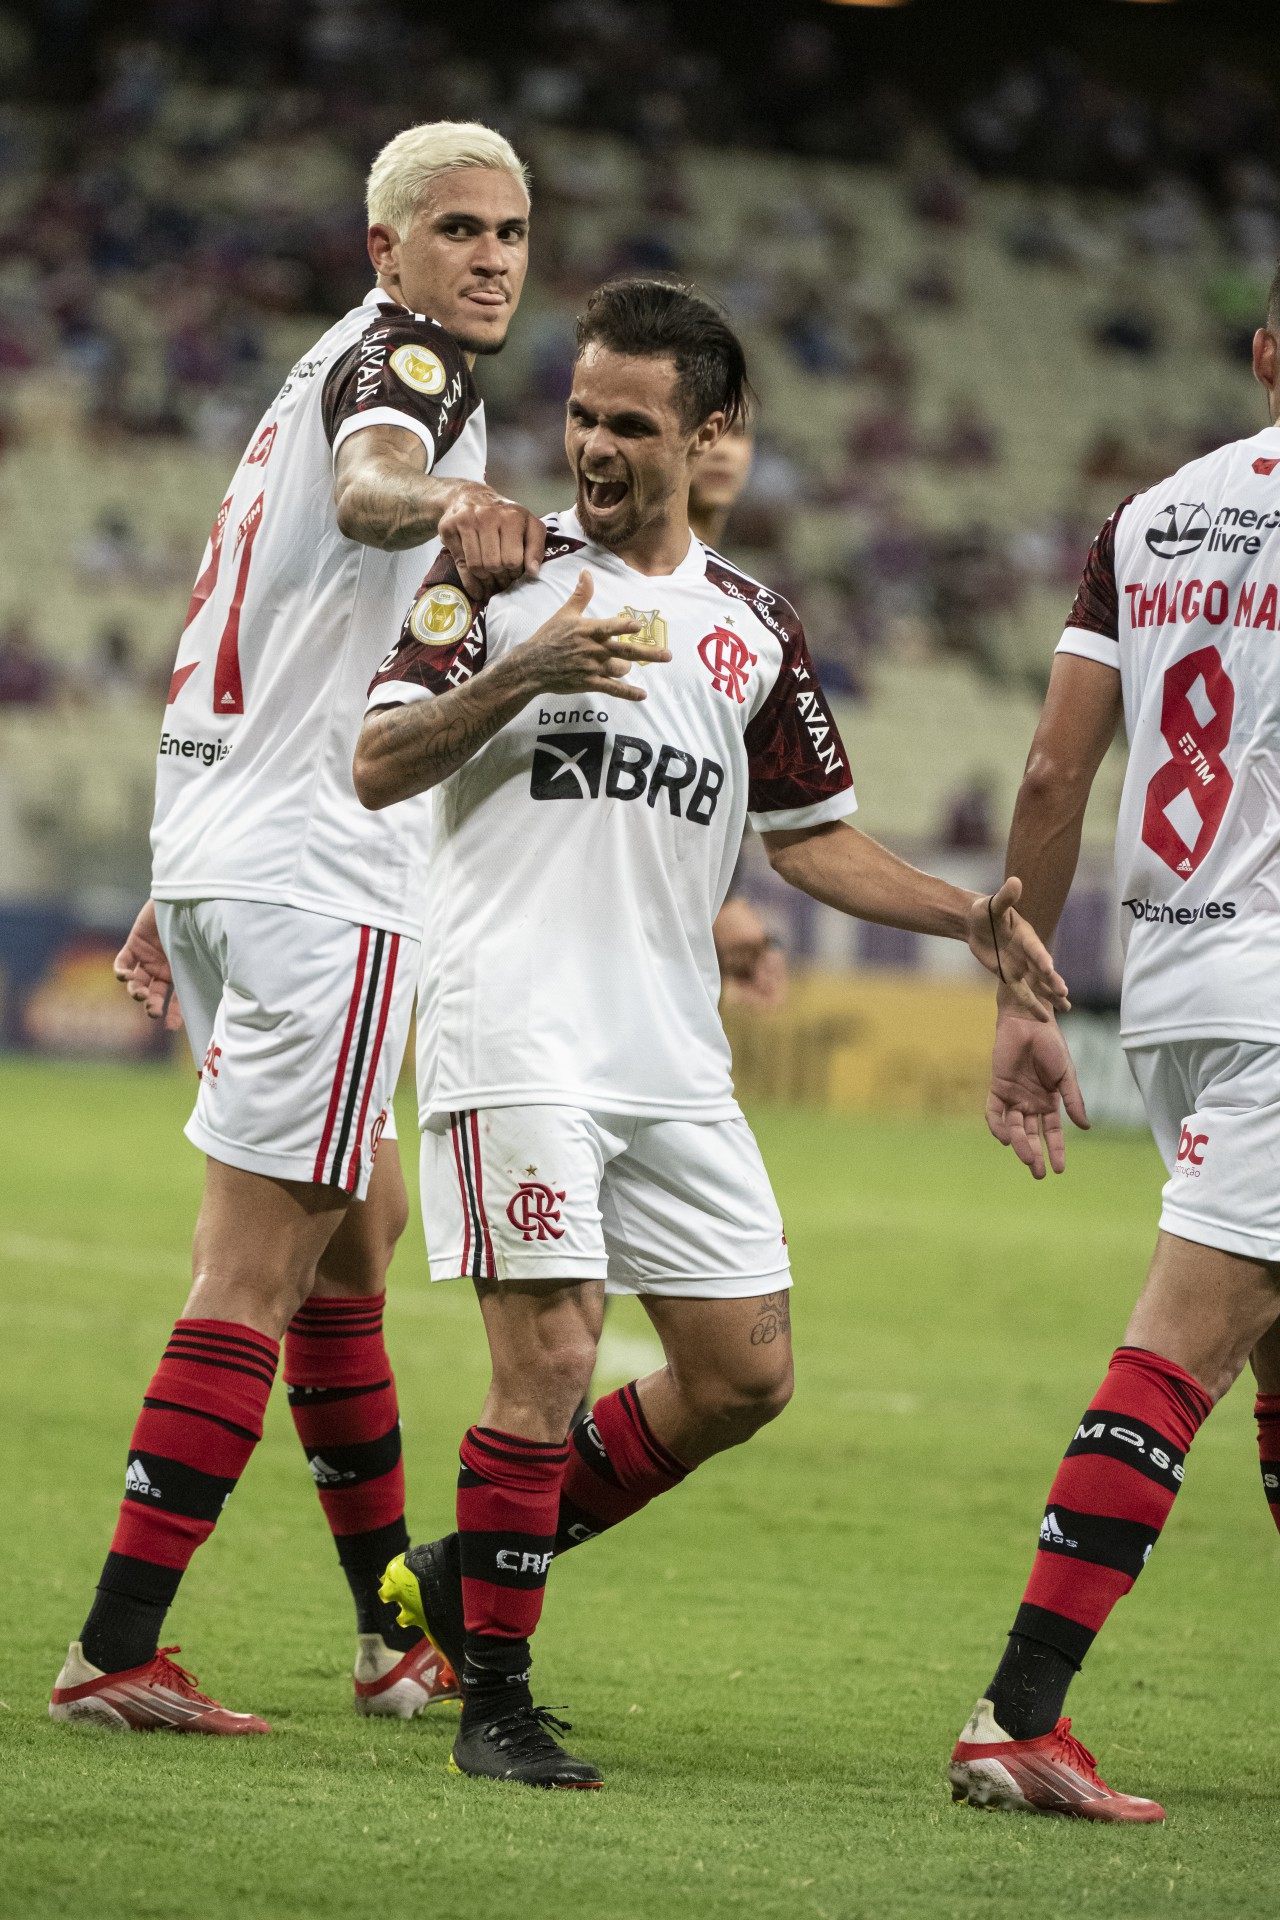 Michael - Alexandre Vidal / Flamengo